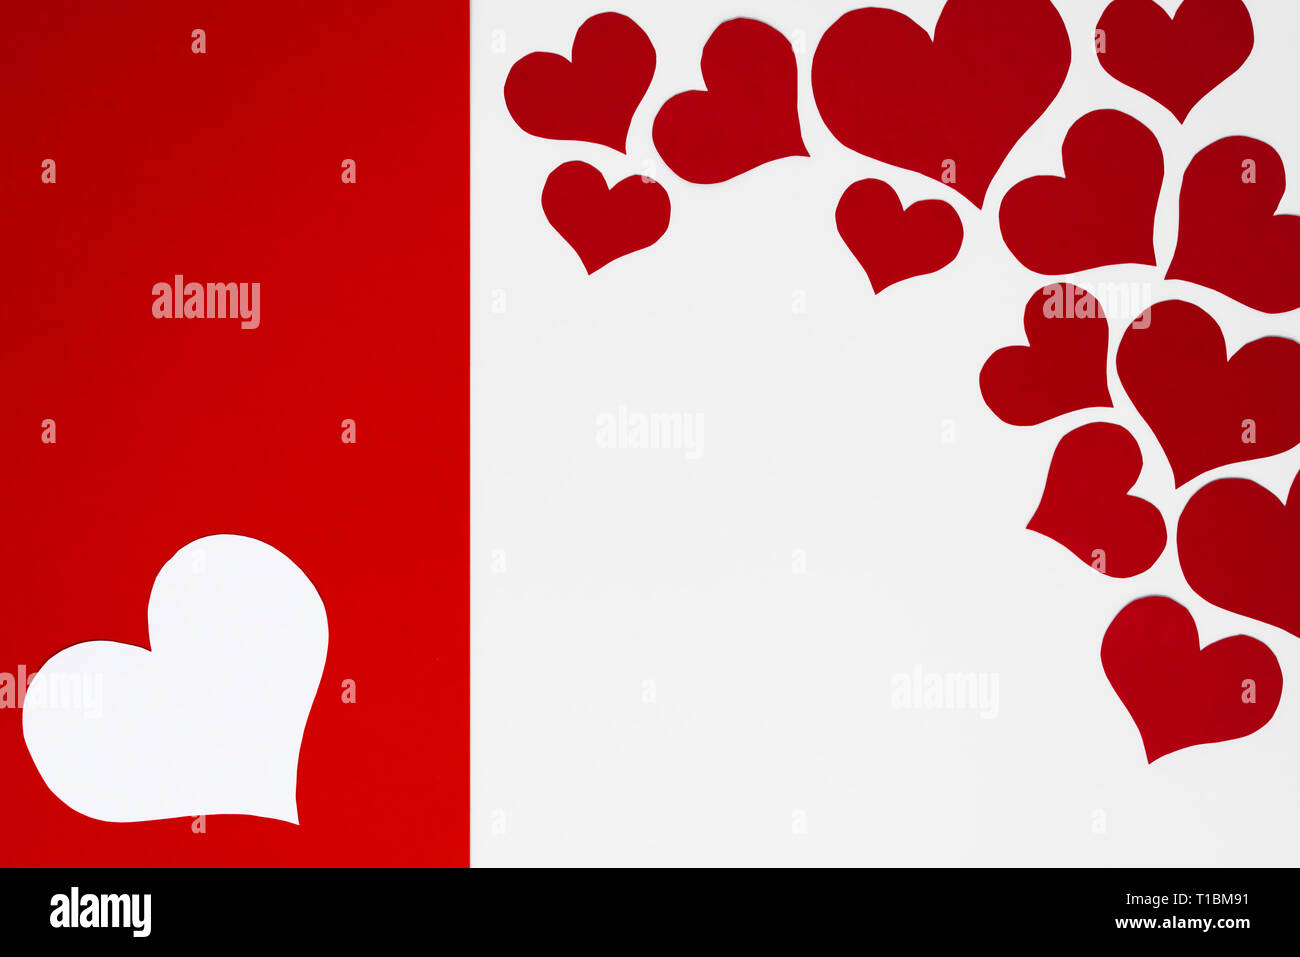 Romantisch roten und weißen Herzen auf zwei Farben Hintergrund als Rahmen für die Leerzeichen für Happy Valentines Grüße. Konzept für Mütter oder Frauen Tag ca Stockfoto